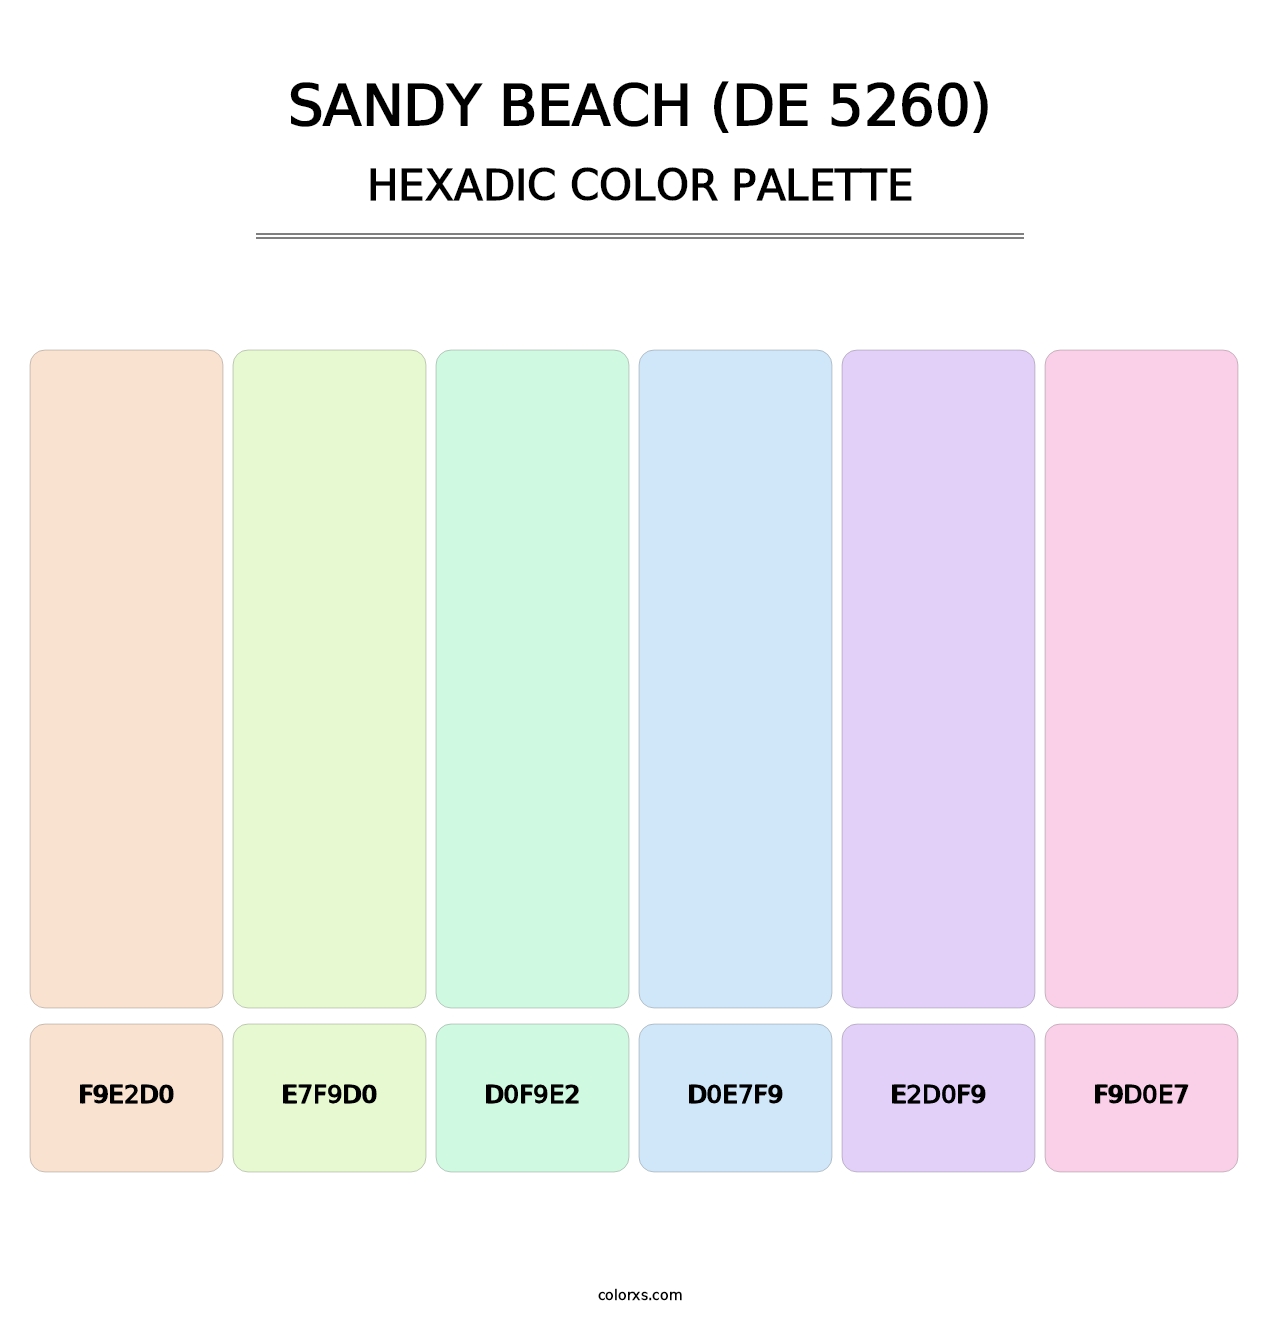 Sandy Beach (DE 5260) - Hexadic Color Palette